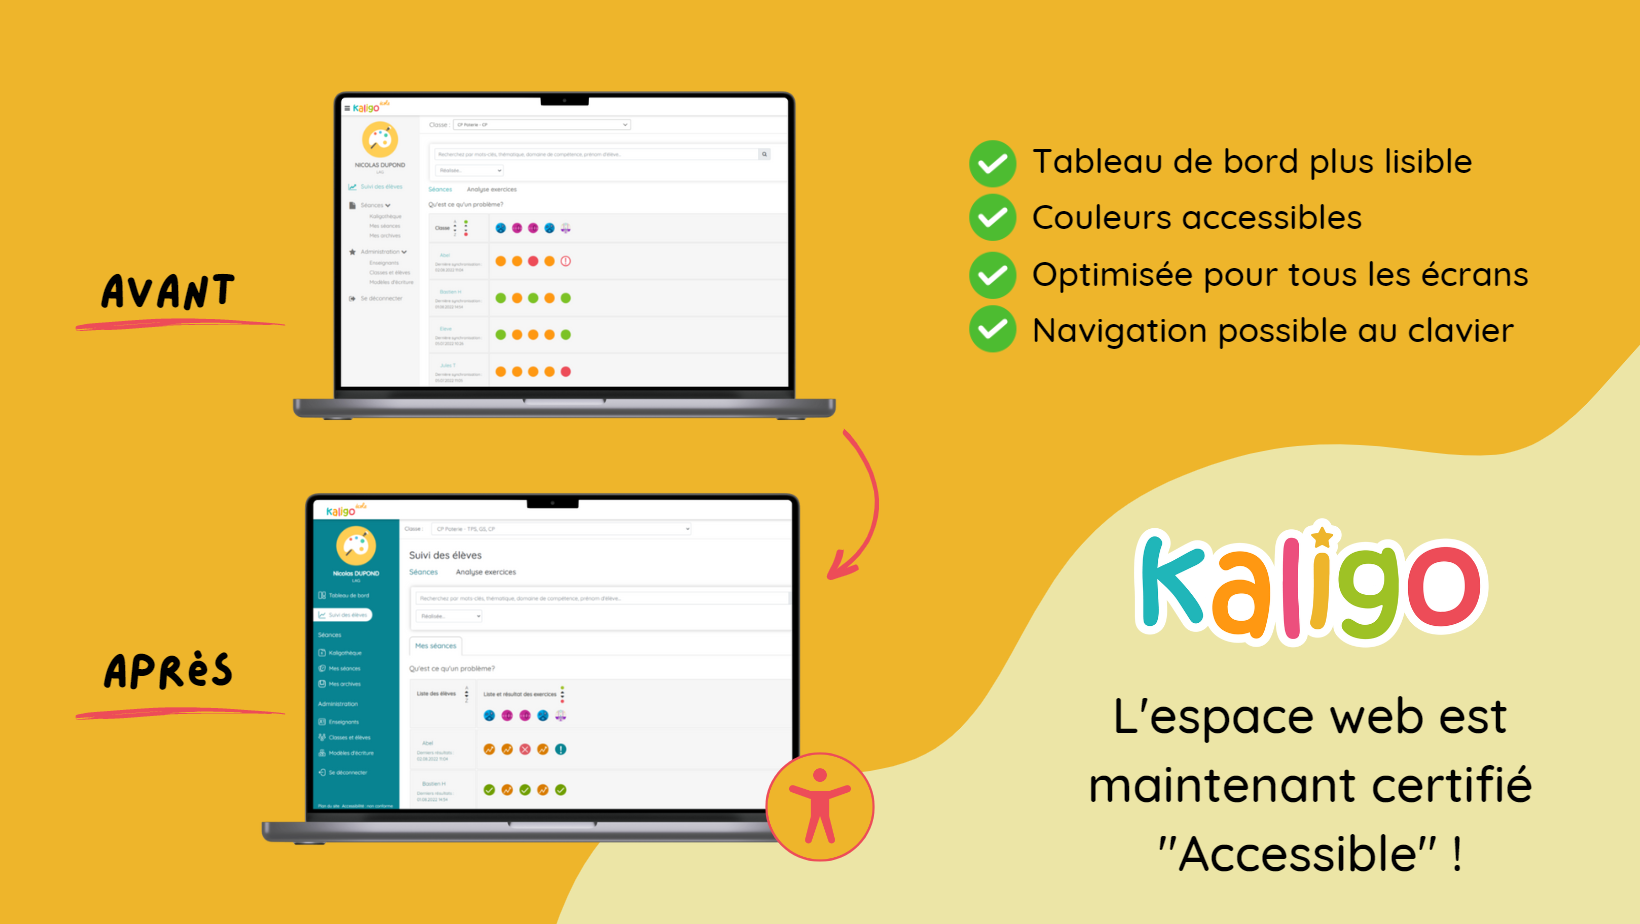 L'espace web Kaligo est maintenant certifié "Accessible" !